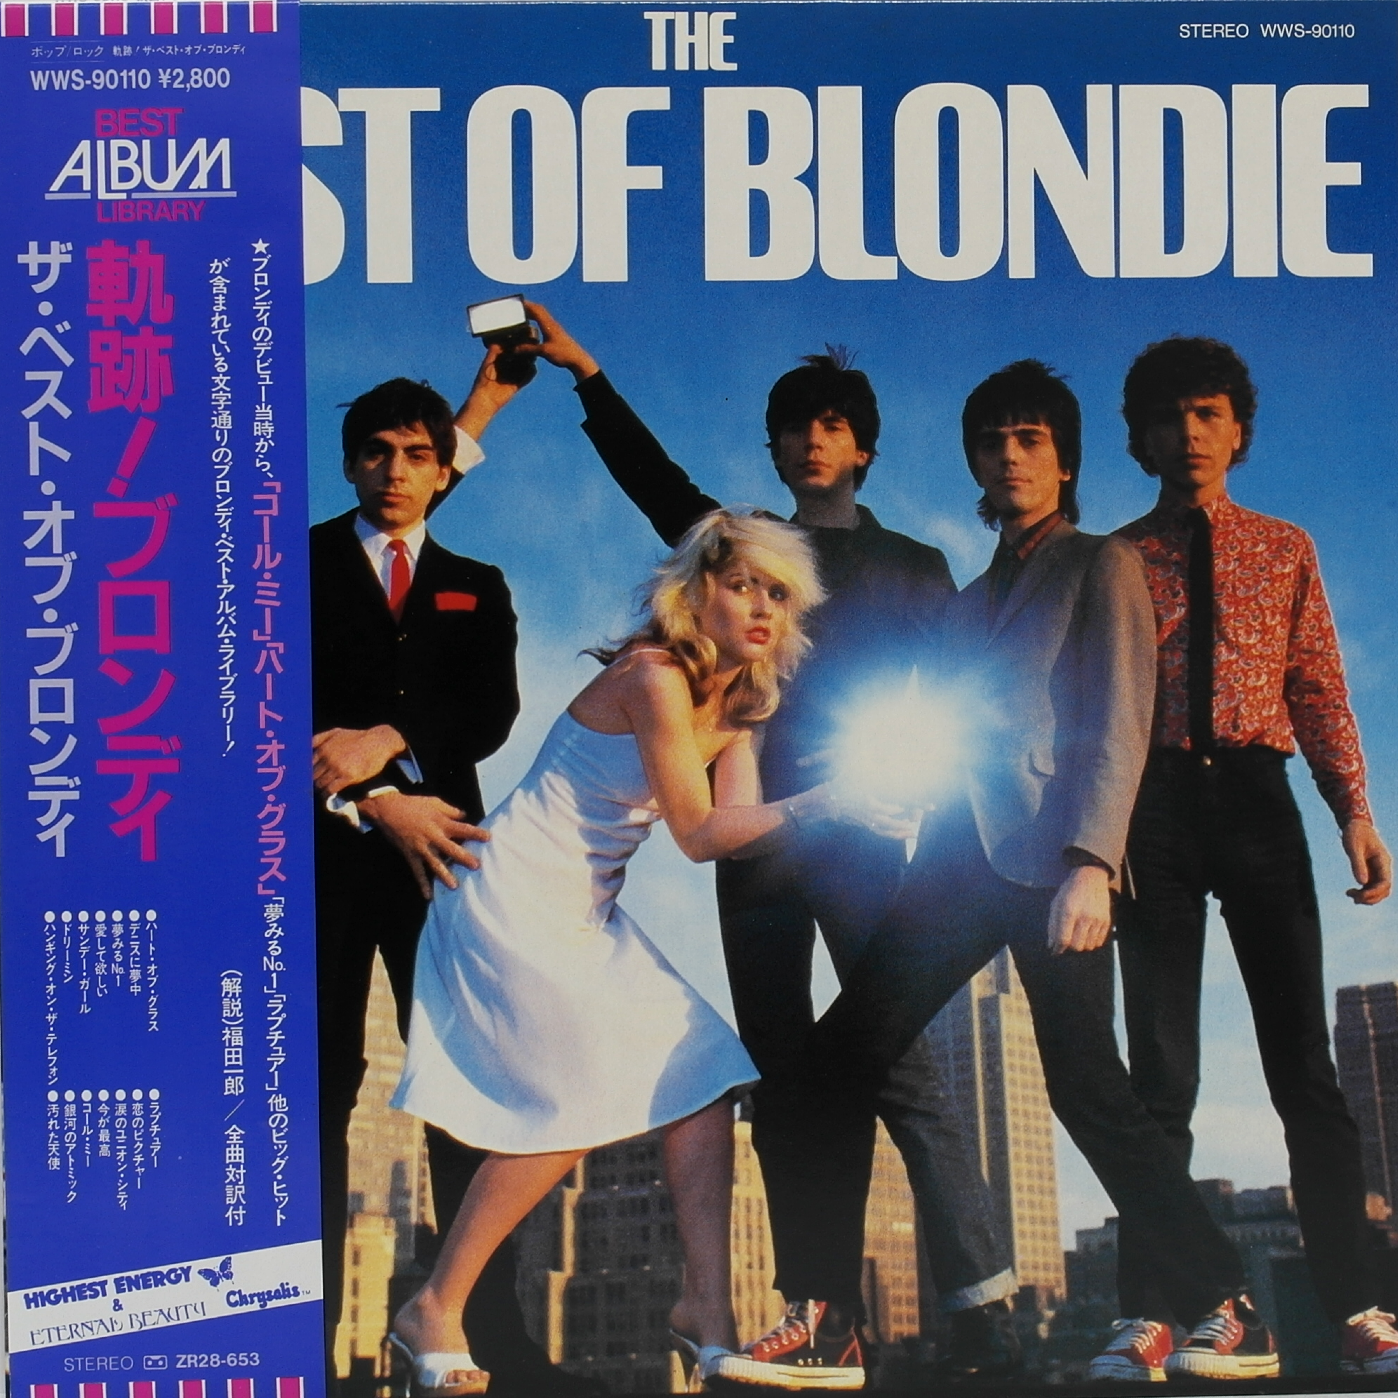 BLONDIE - The Best Of Blondie